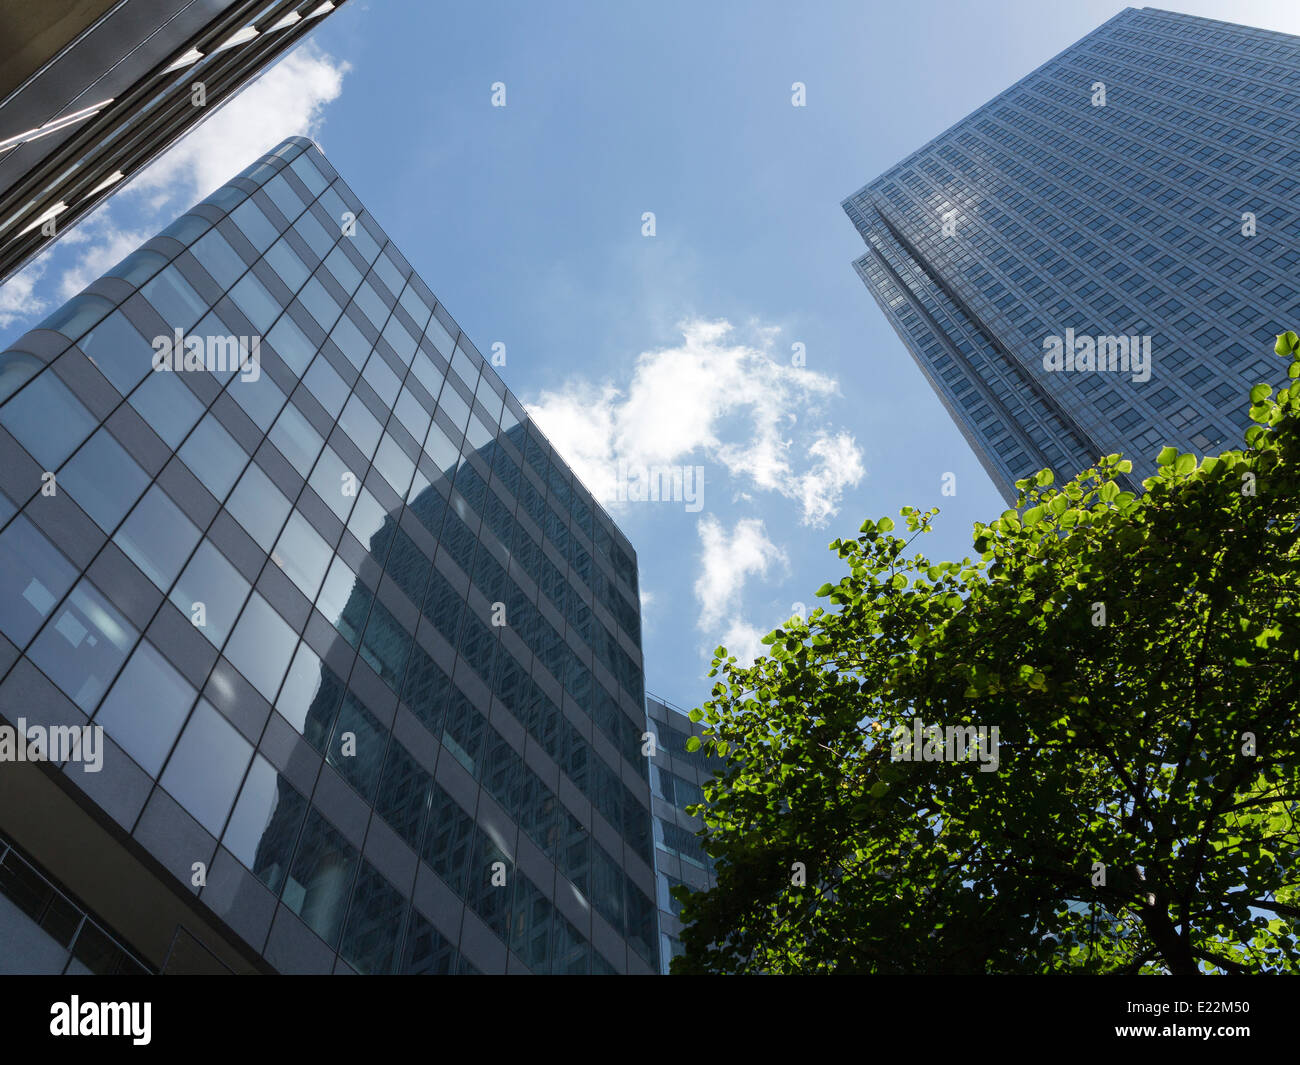 Blickte zu modernen Glas und Stahl stark reflektierende kommerzielle Wolkenkratzer gegen ein strahlend blauer Himmel mit Wolken Licht wight Stockfoto